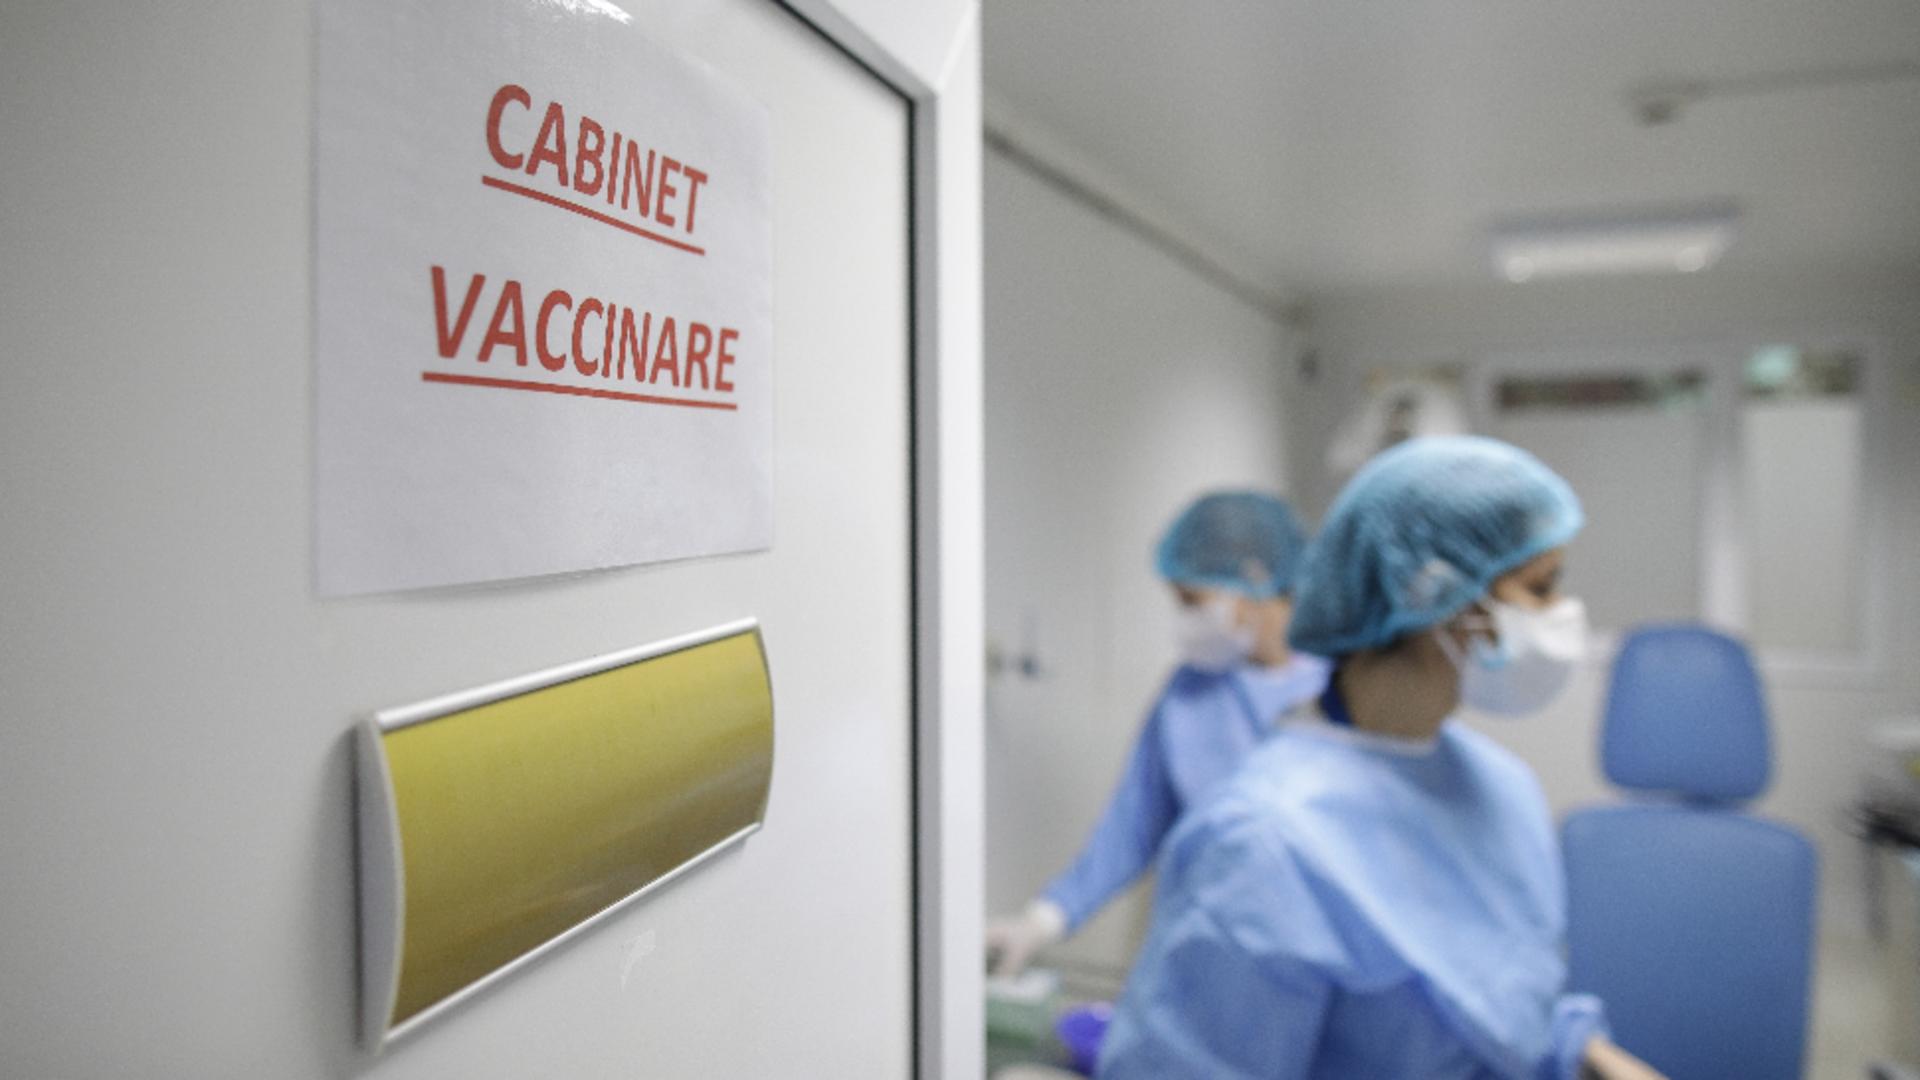 Cabinet de vaccinare